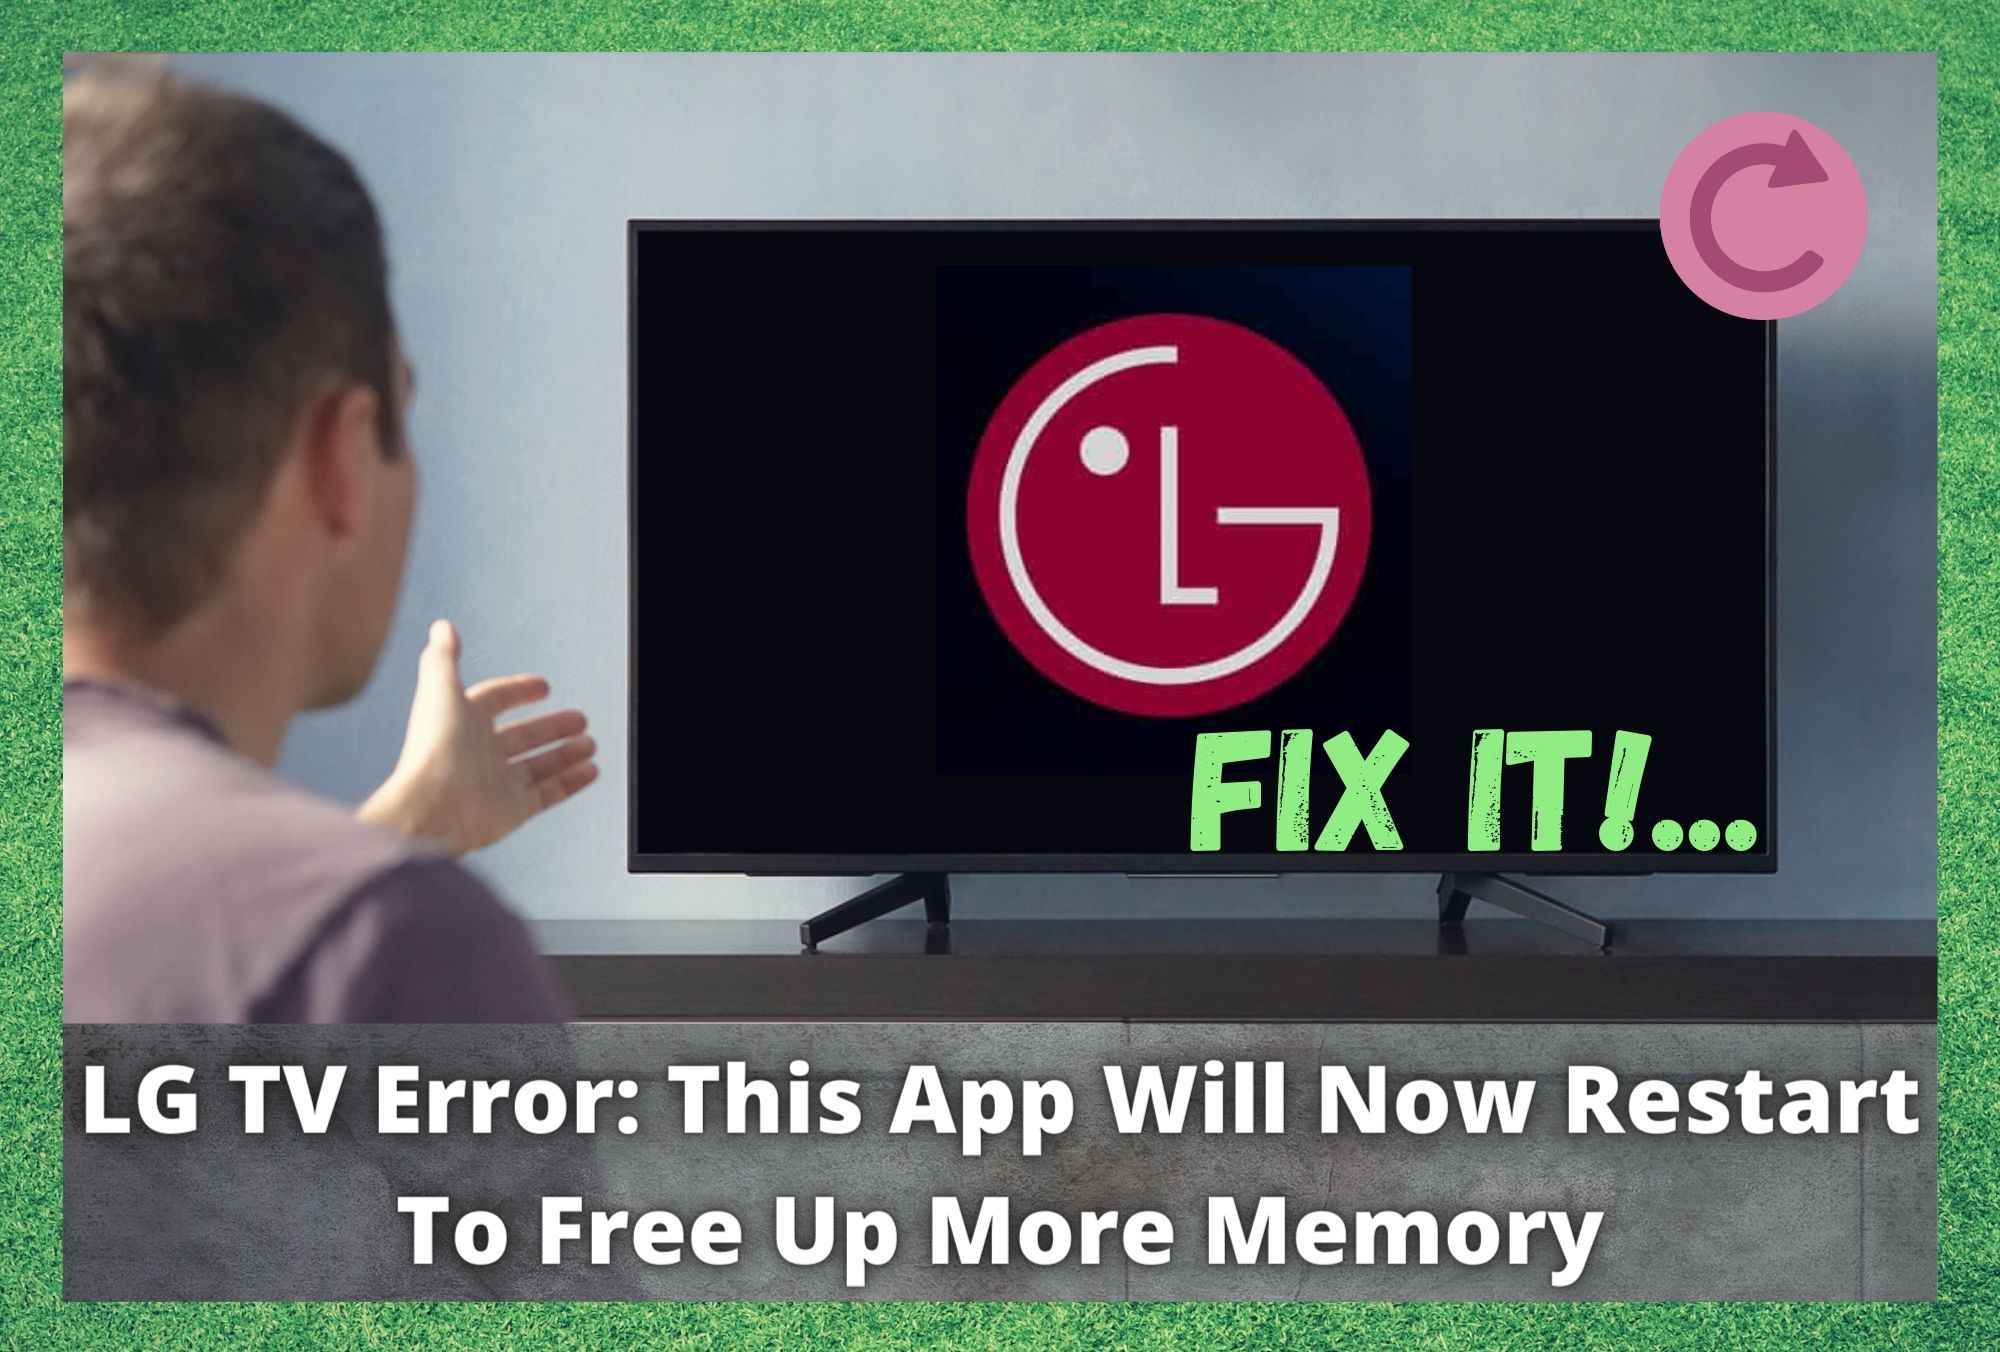 Errore LG TV: questa app si riavvia per liberare più memoria (6 soluzioni)